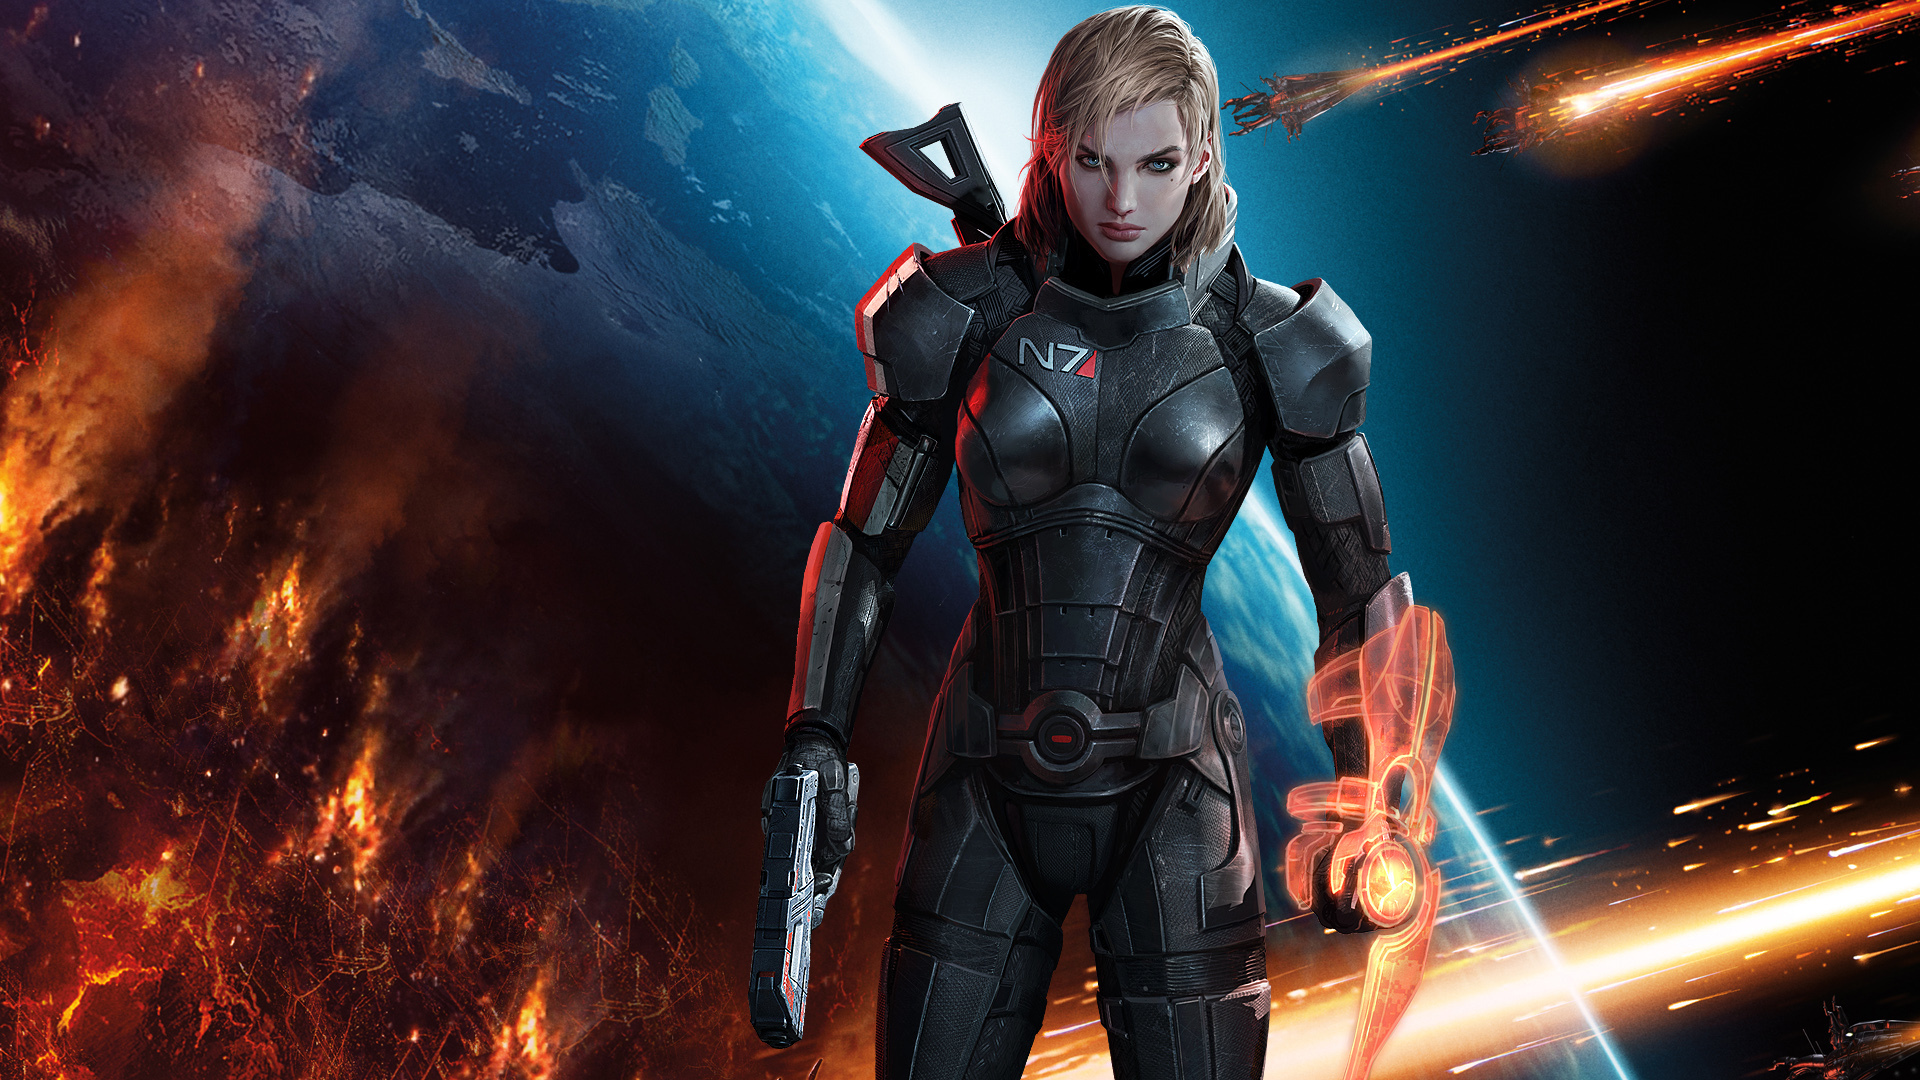 commander shepard, video game, mass effect 3, alien, mass effect, sci fi, warrior